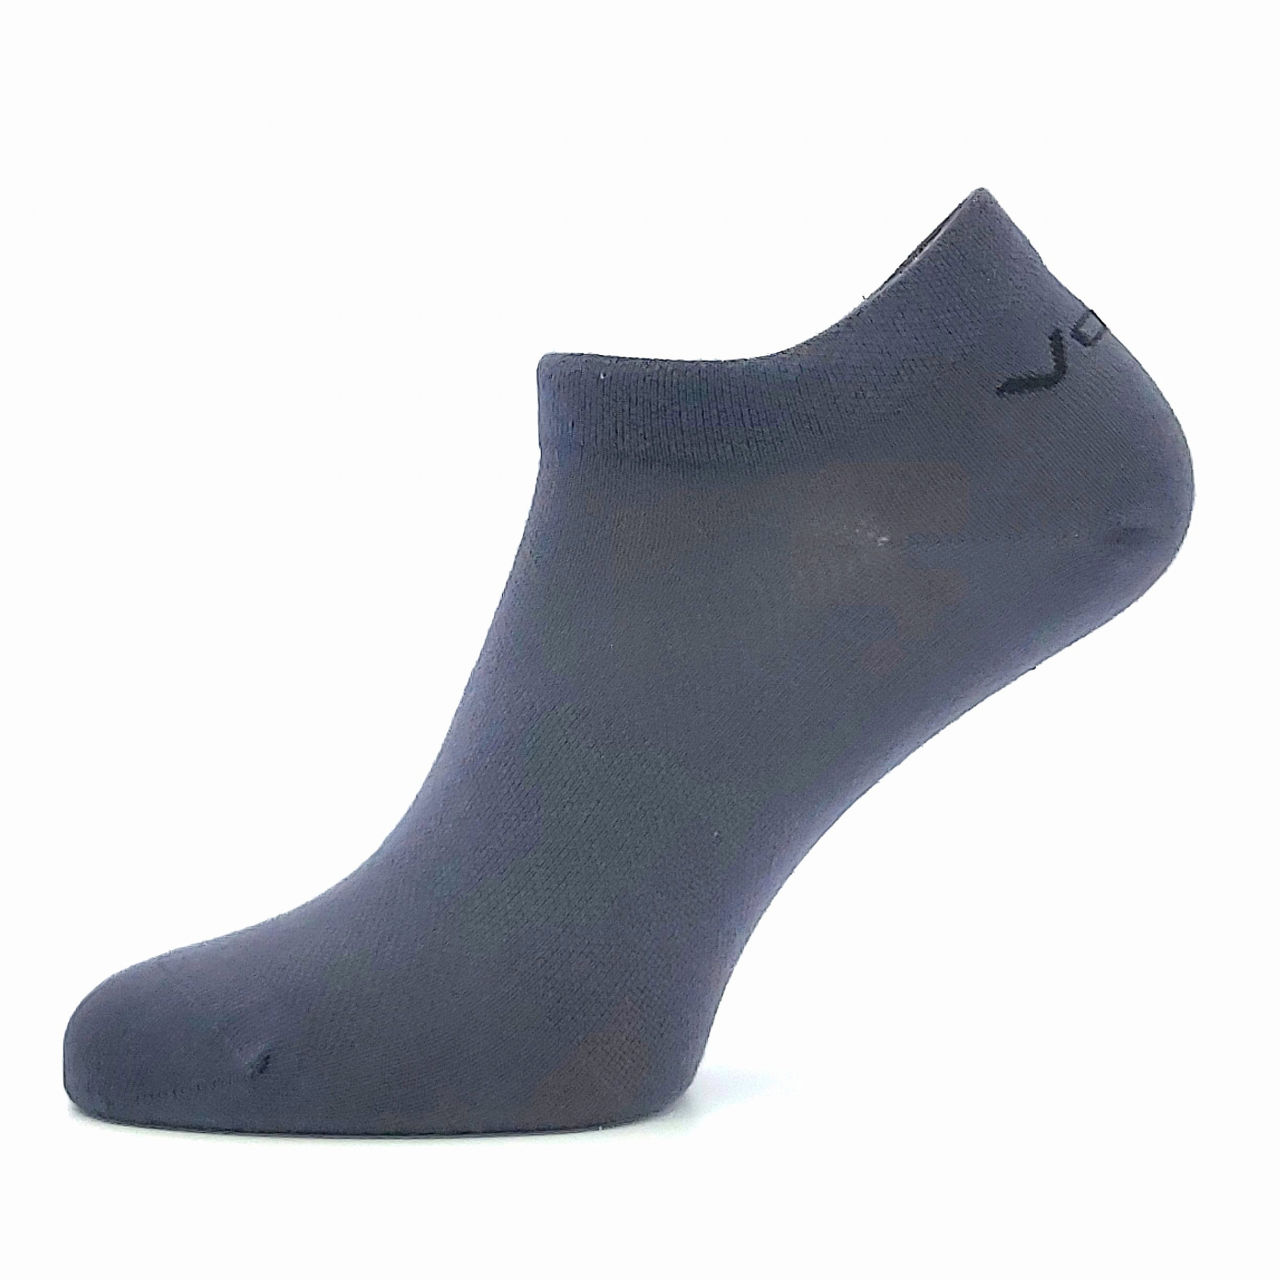 Ponožky unisex klasické Voxx Metys - tmavě šedé, 35-38